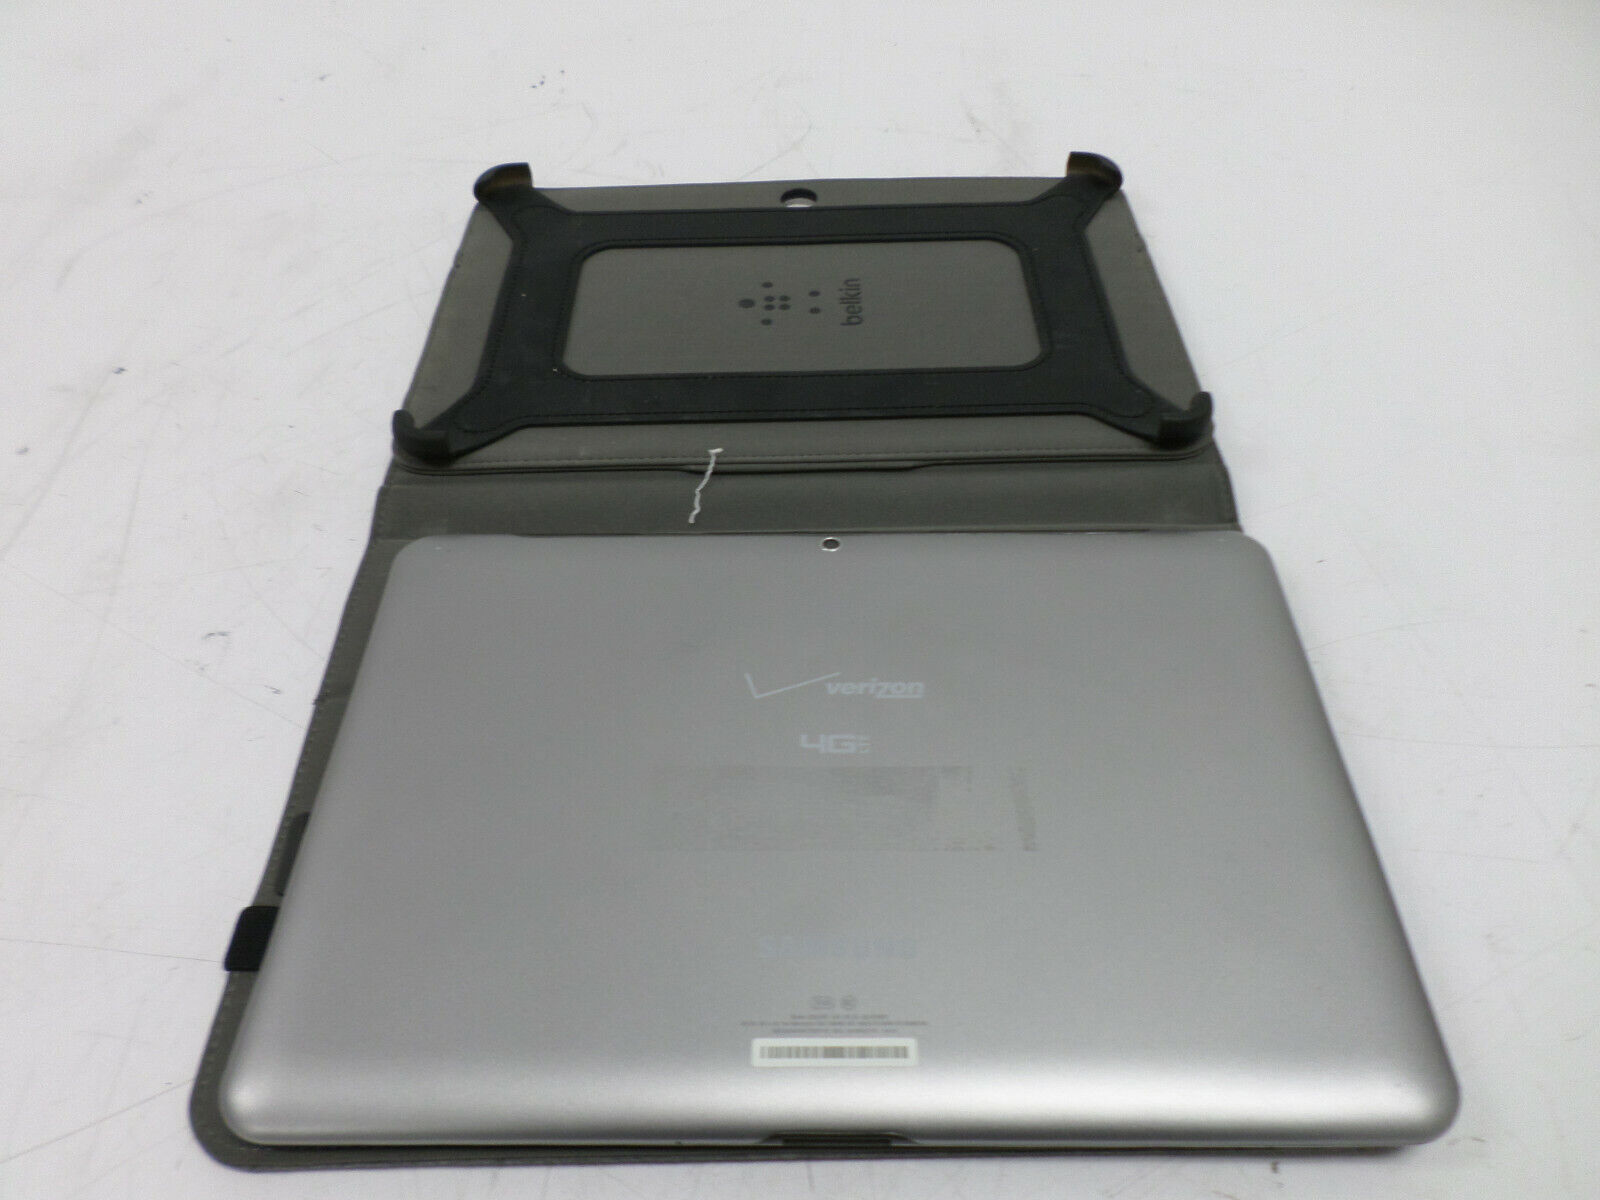 Samsung Galaxy Tab 2 Model SCH-I915 8GB  Wi-Fi + 4G (Verizon) 10.1in - Silver